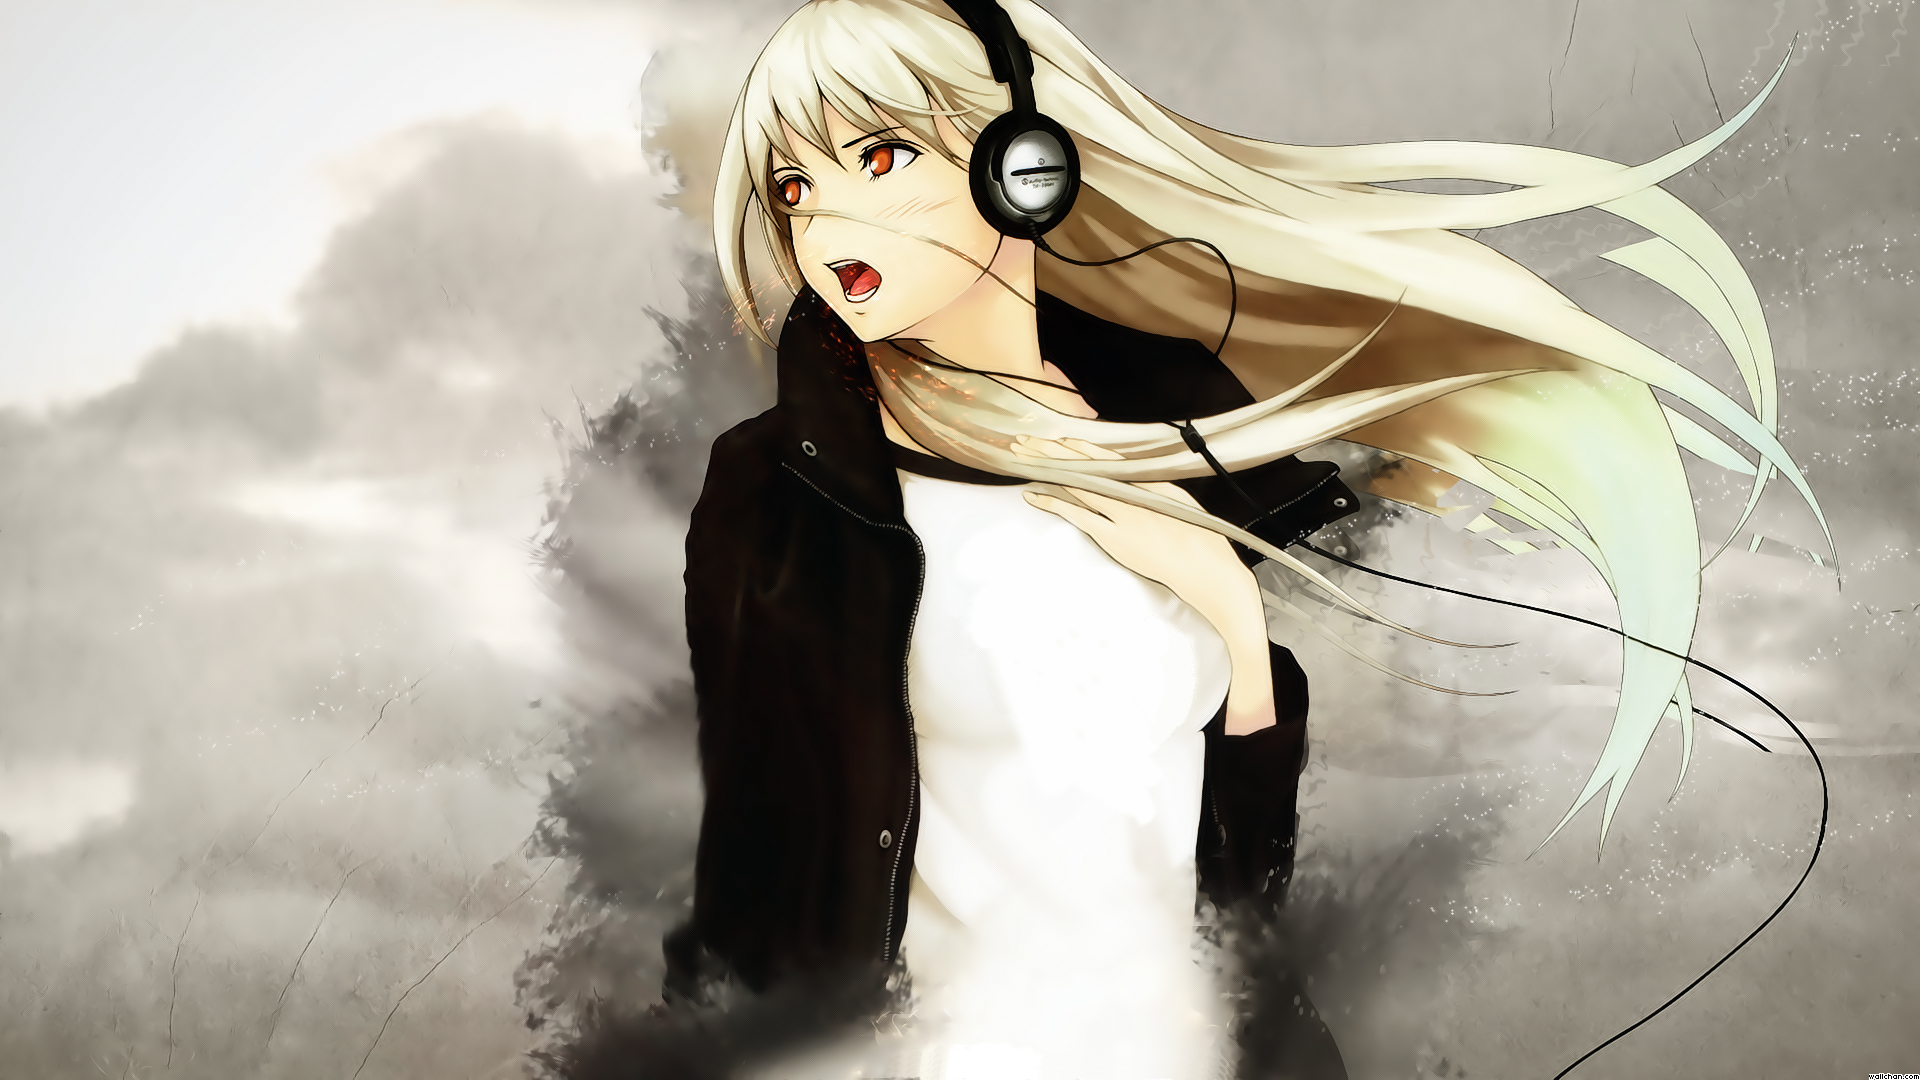 Best Anime Girl Wallpaper Anime Girl With Headphones Hd 69925